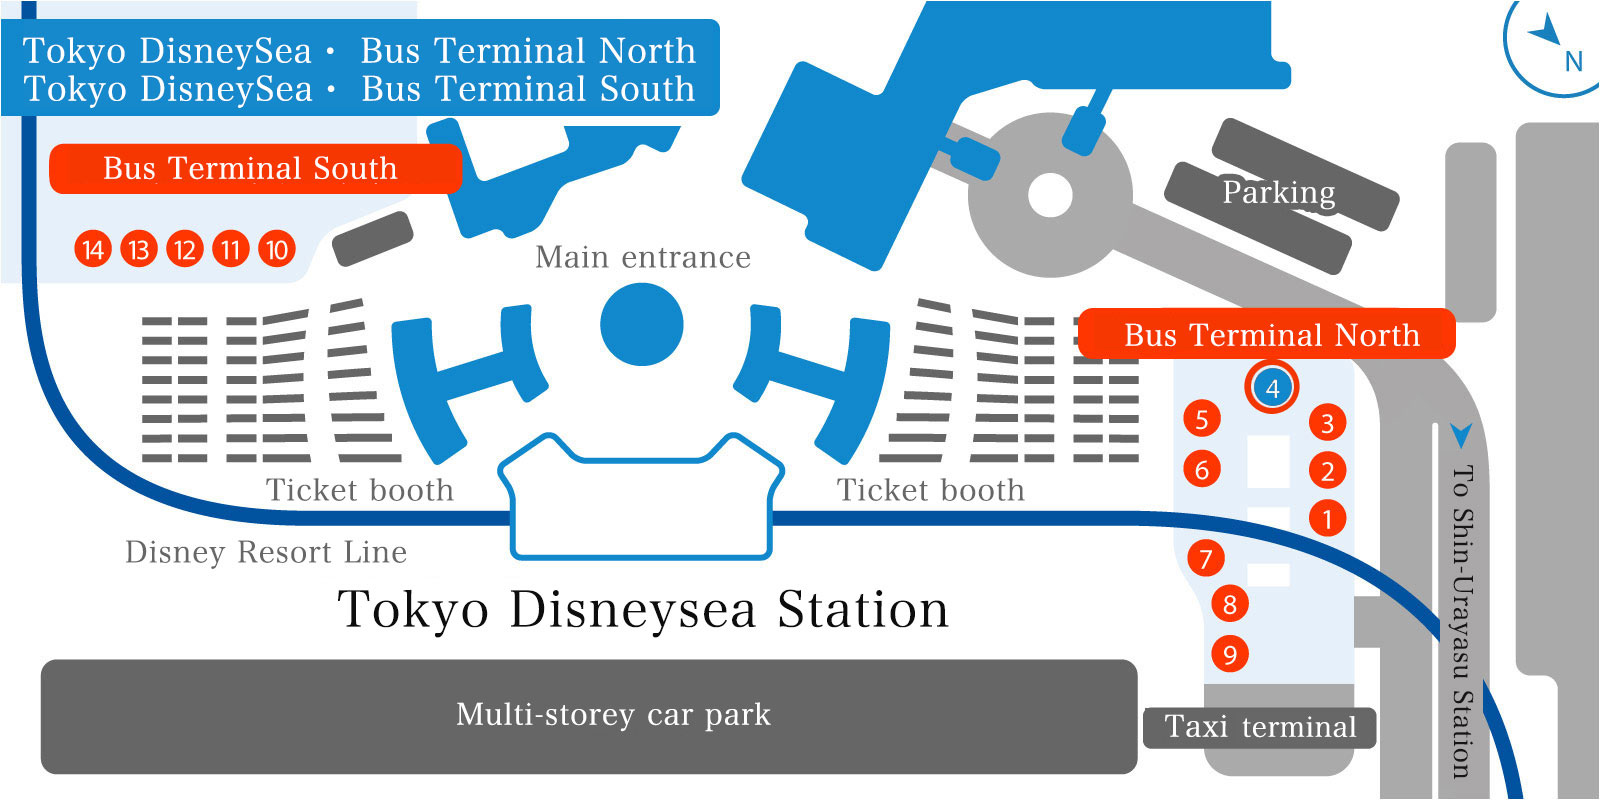 Tokyo DisneySea® Bus Terminal North (No. 4 Boarding Platform)